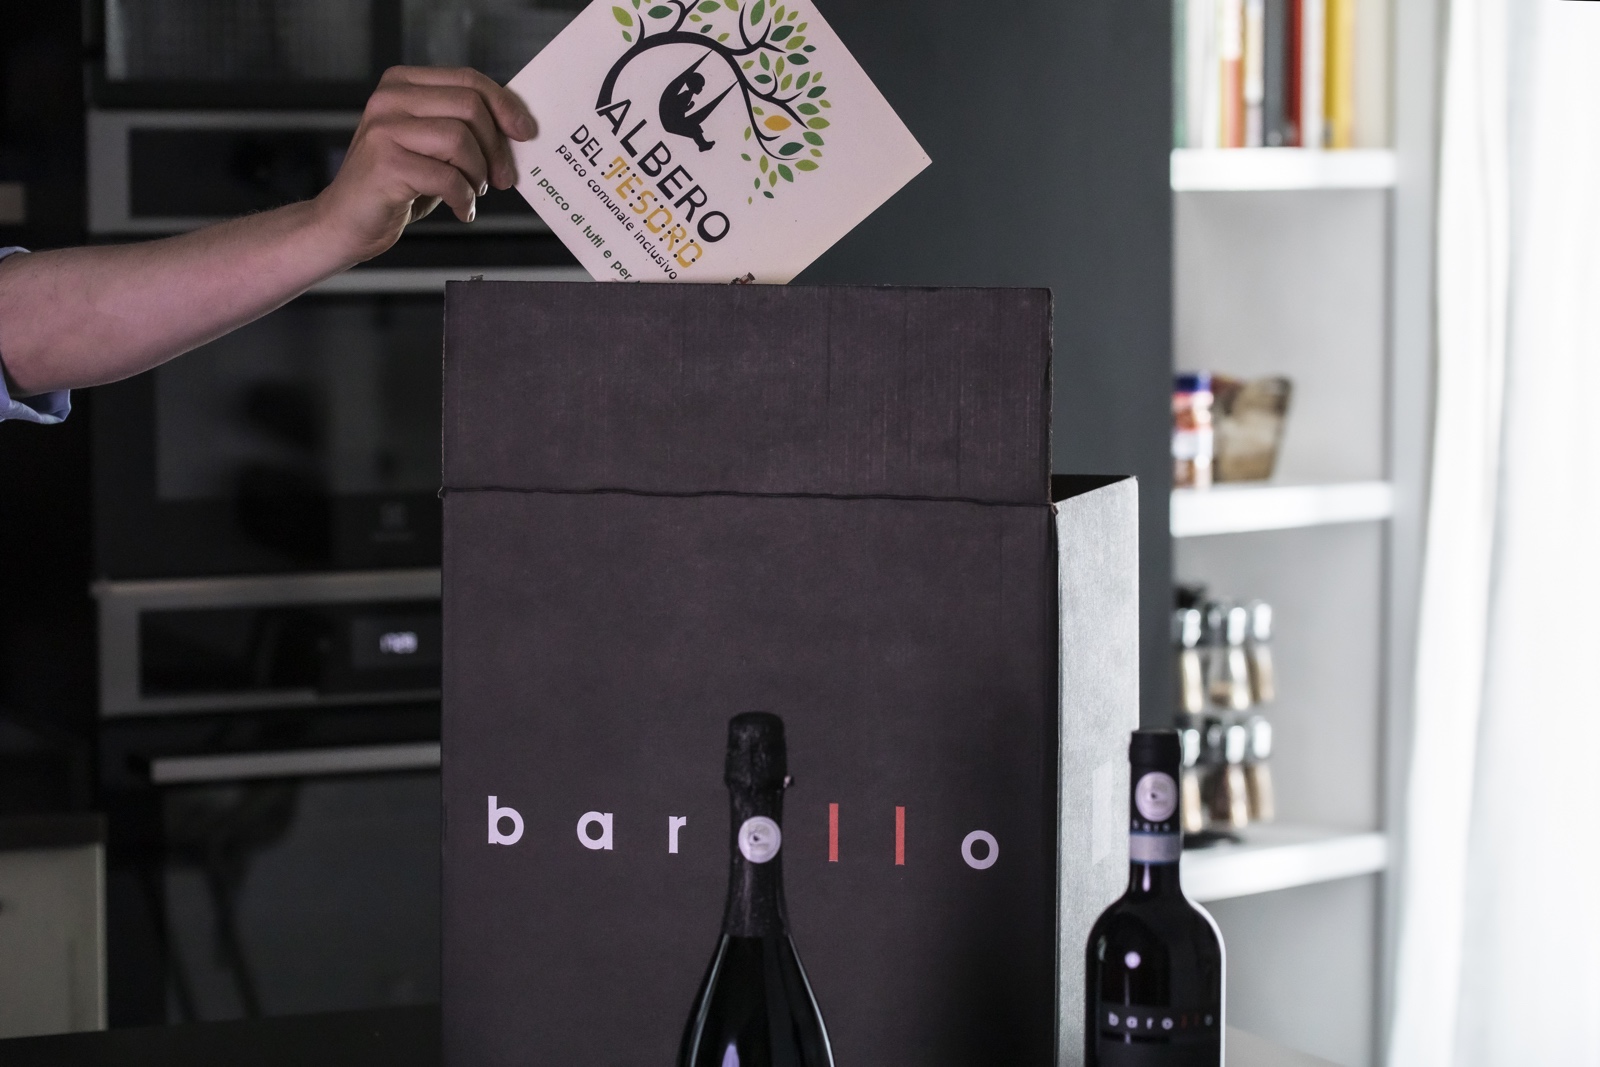 La nuova raccolta fondi: le bottiglie di vino Barollo sostengono Albero del Tesoro e lo accompagnano in Italia e nel mondo